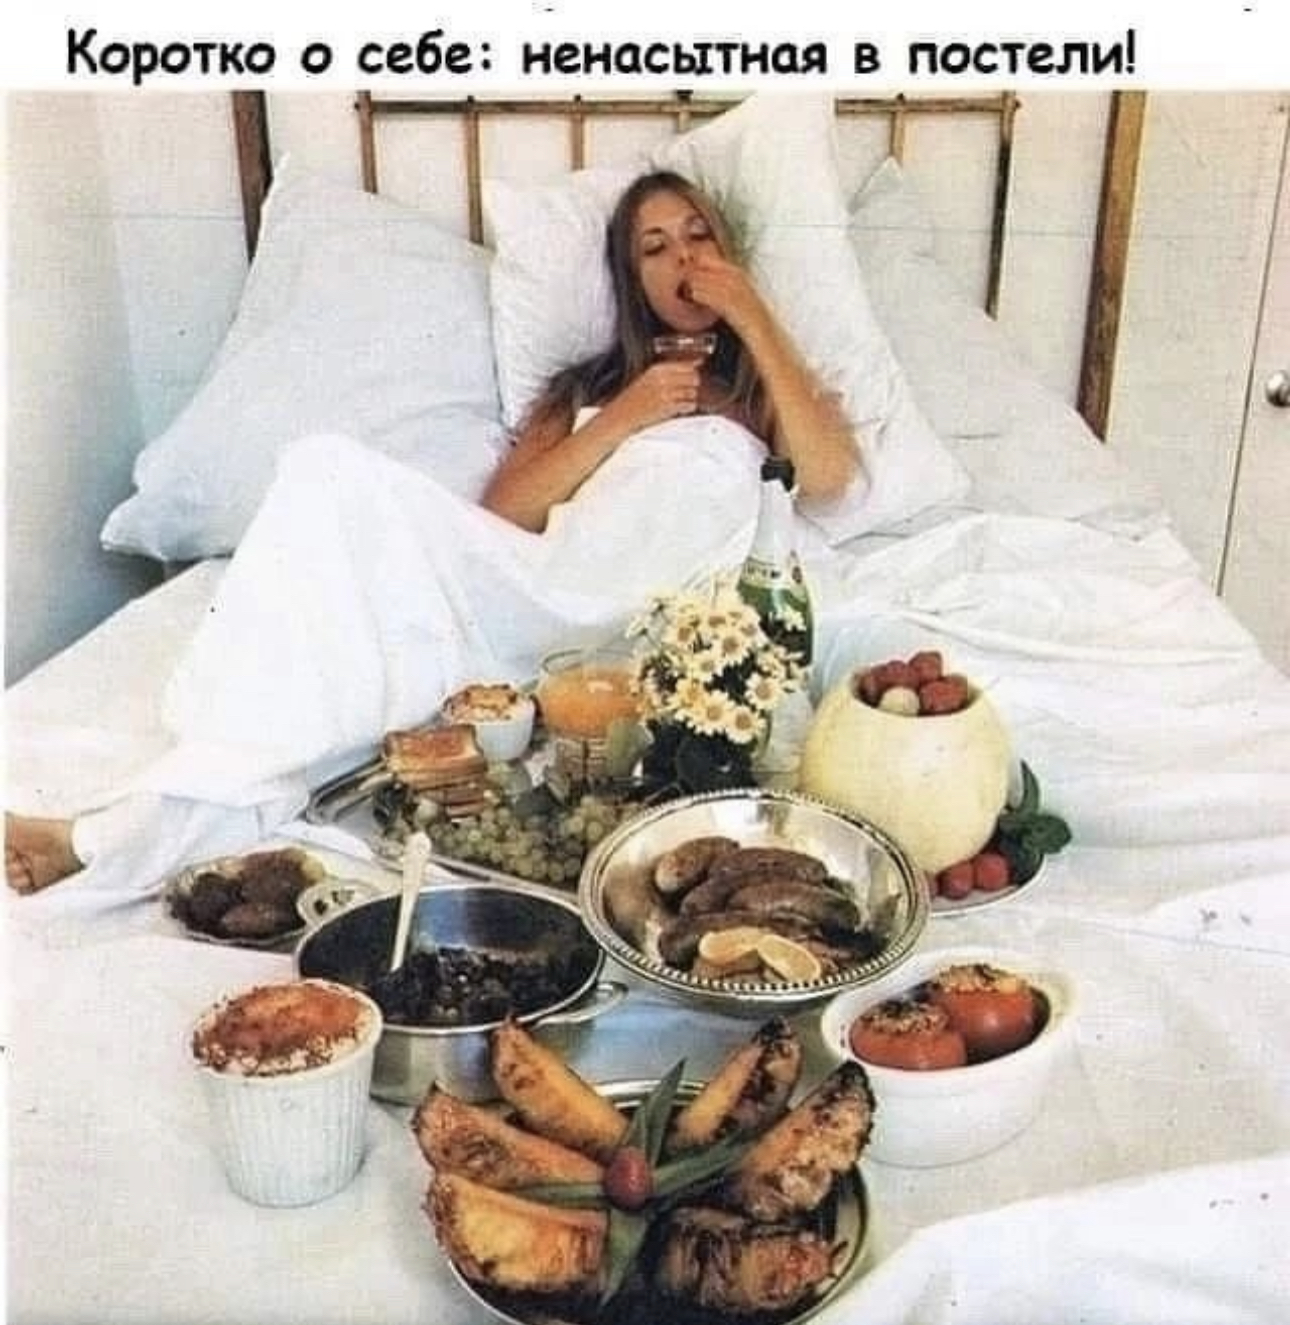 Субботняя жена домашний. Завтрак в постель девушке. Завтрак с любимым. Еда в постели. Еда в кровати.